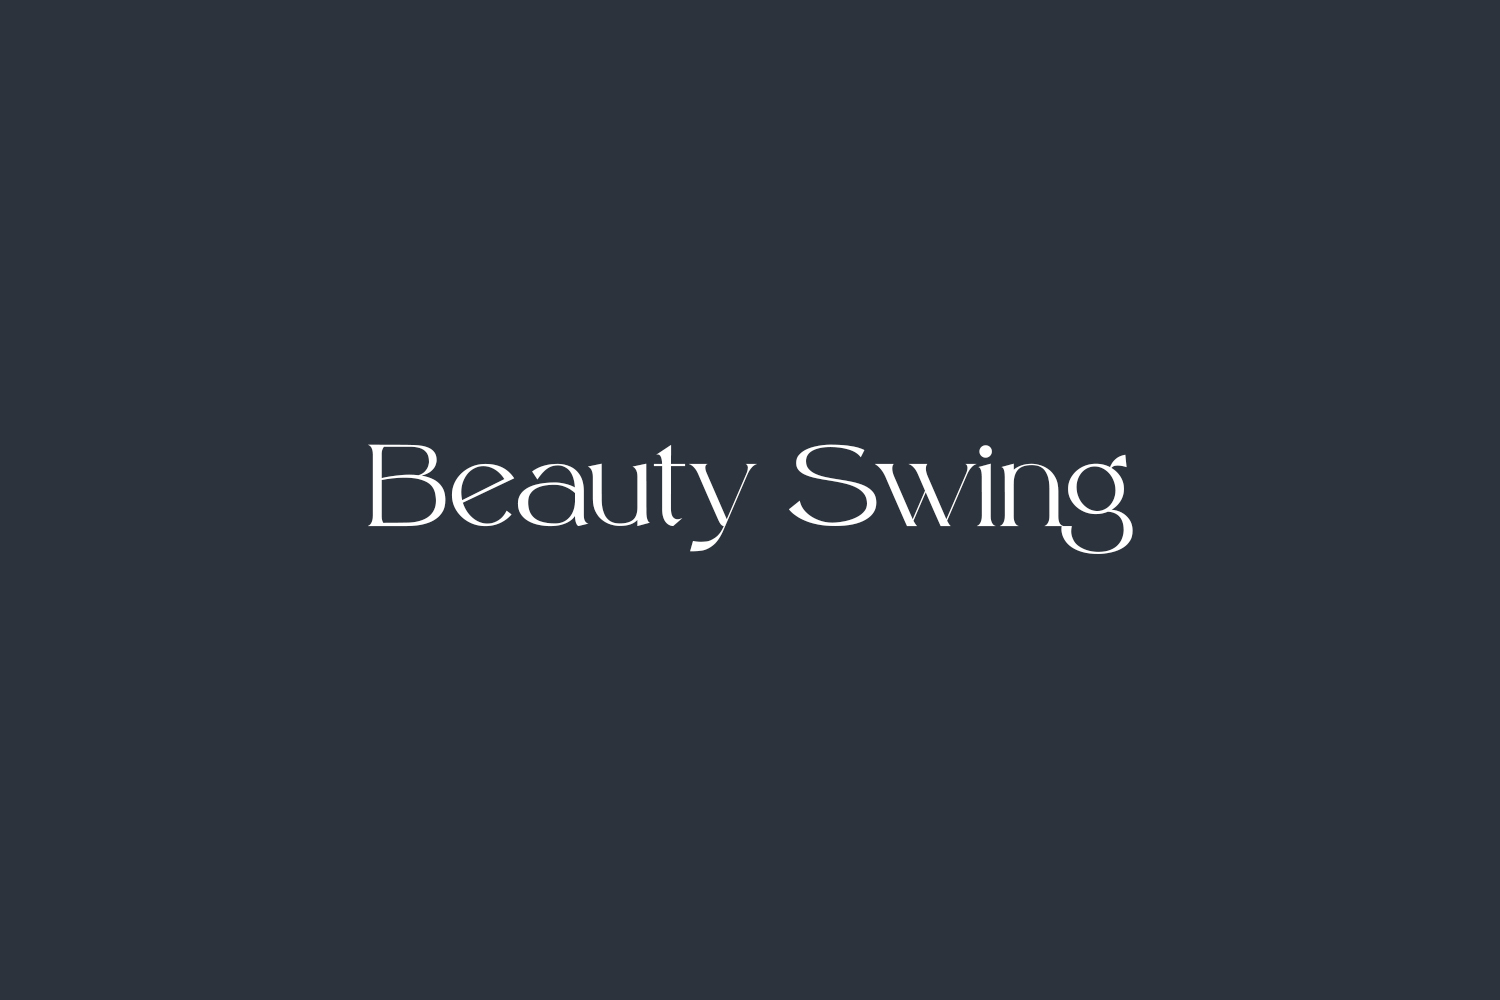 Beauty Swing Free Font